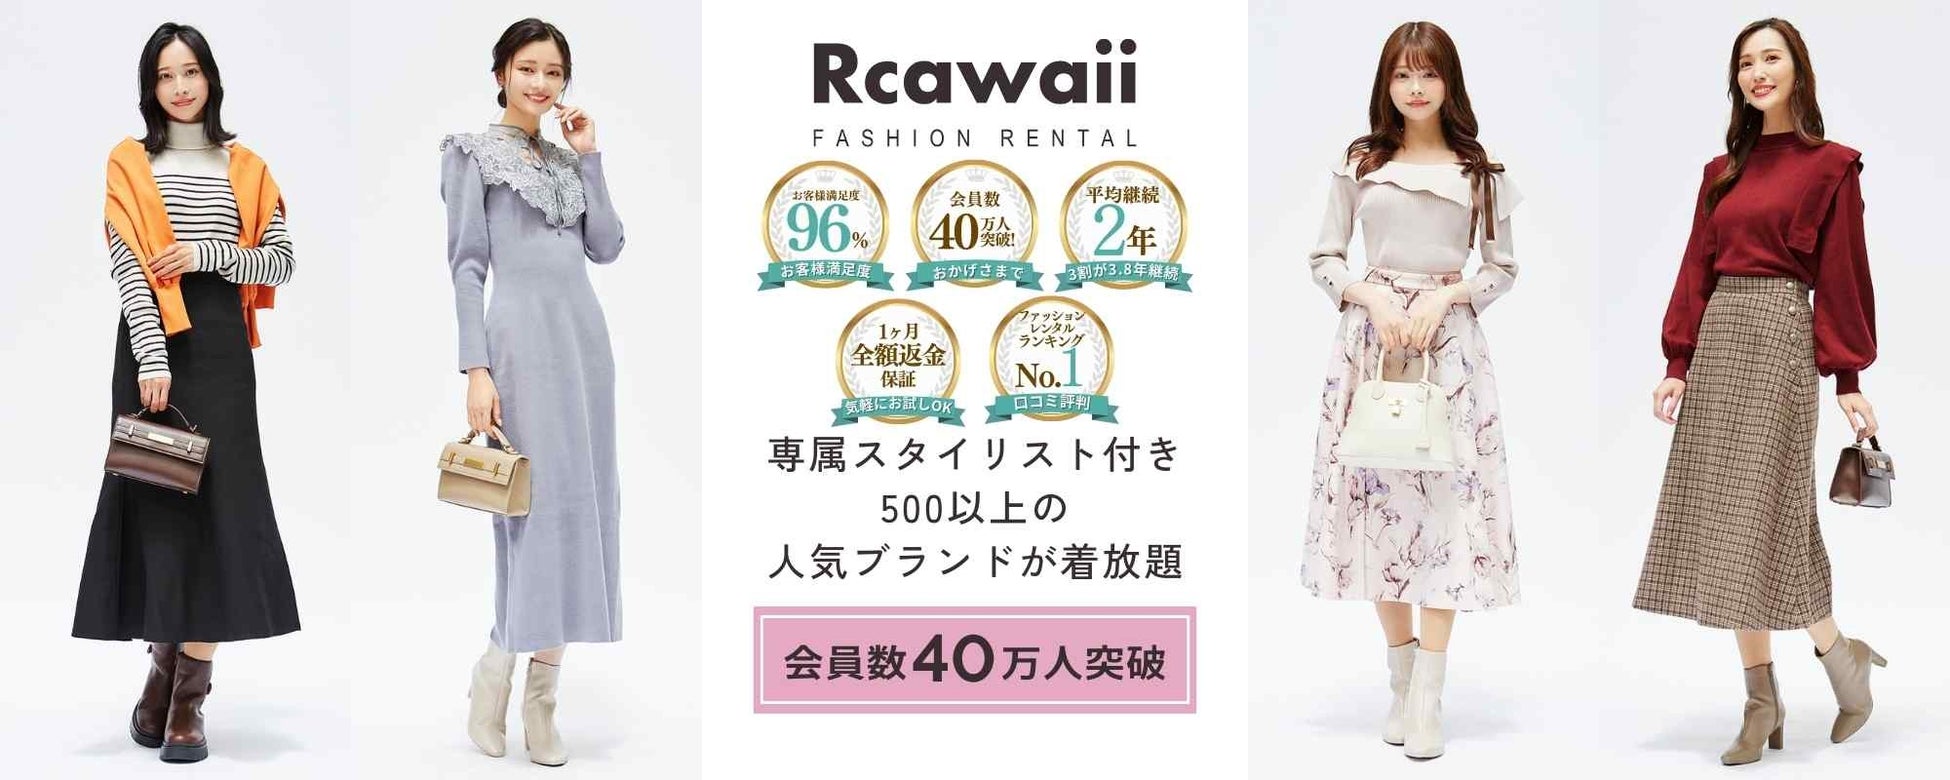 ファッションレンタルのRcawaii